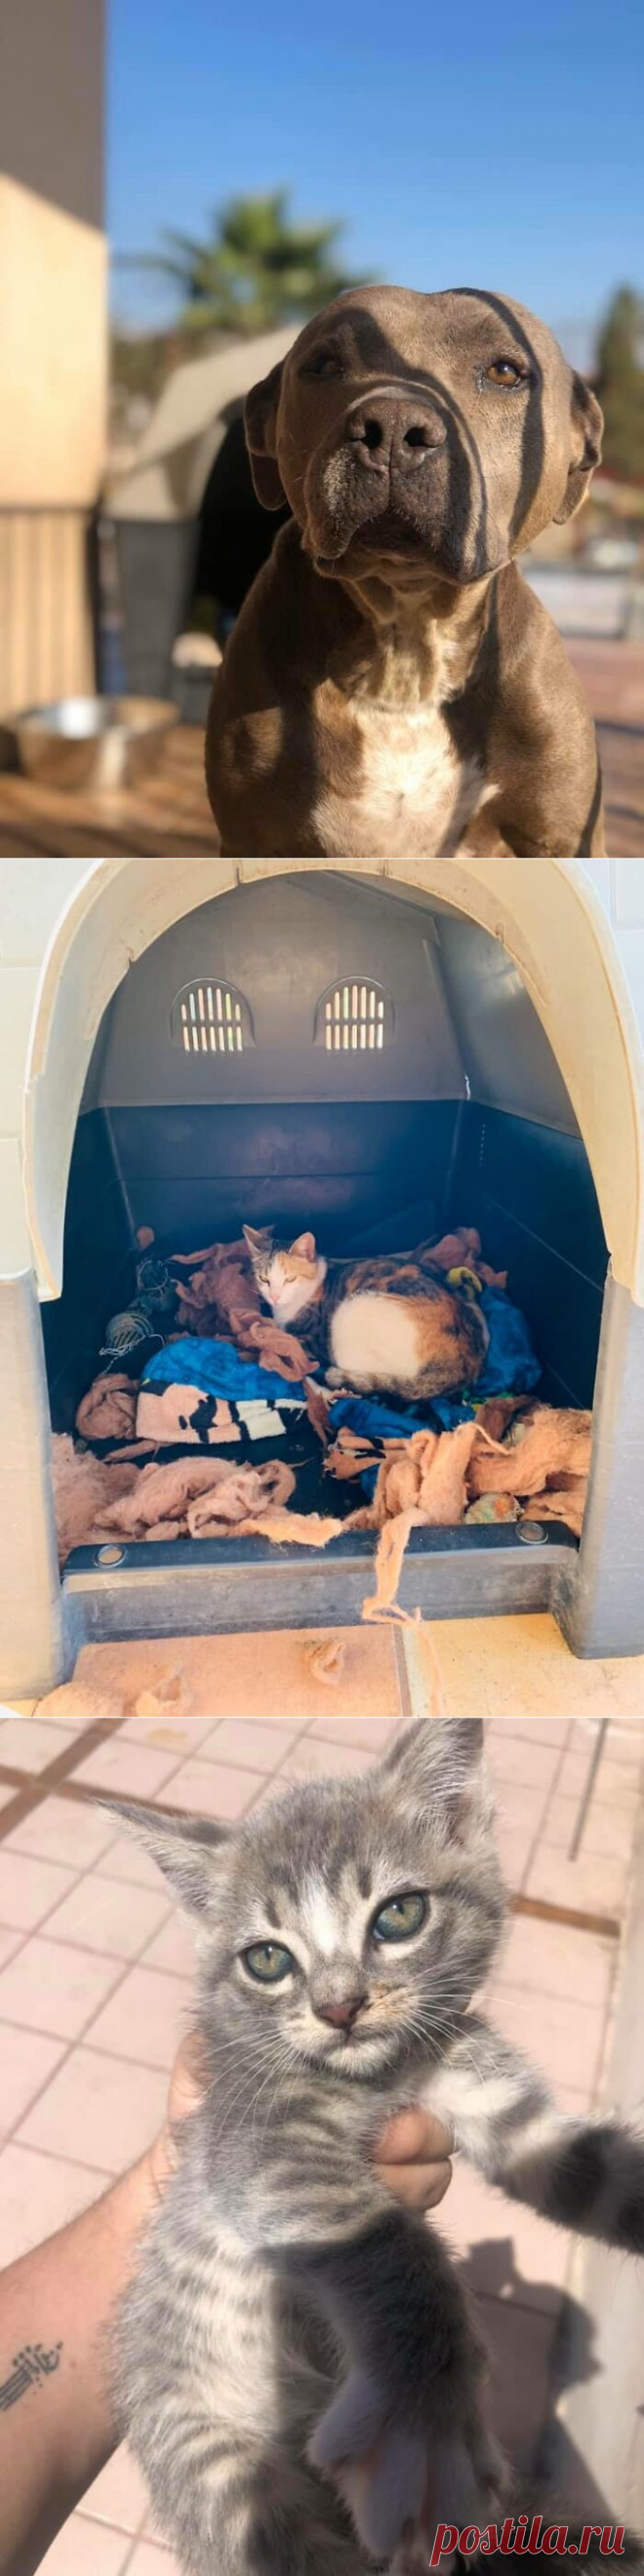 Питбуль попросил у хозяина разрешения приютить у себя в будке беременную кошку, чтобы она могла родить